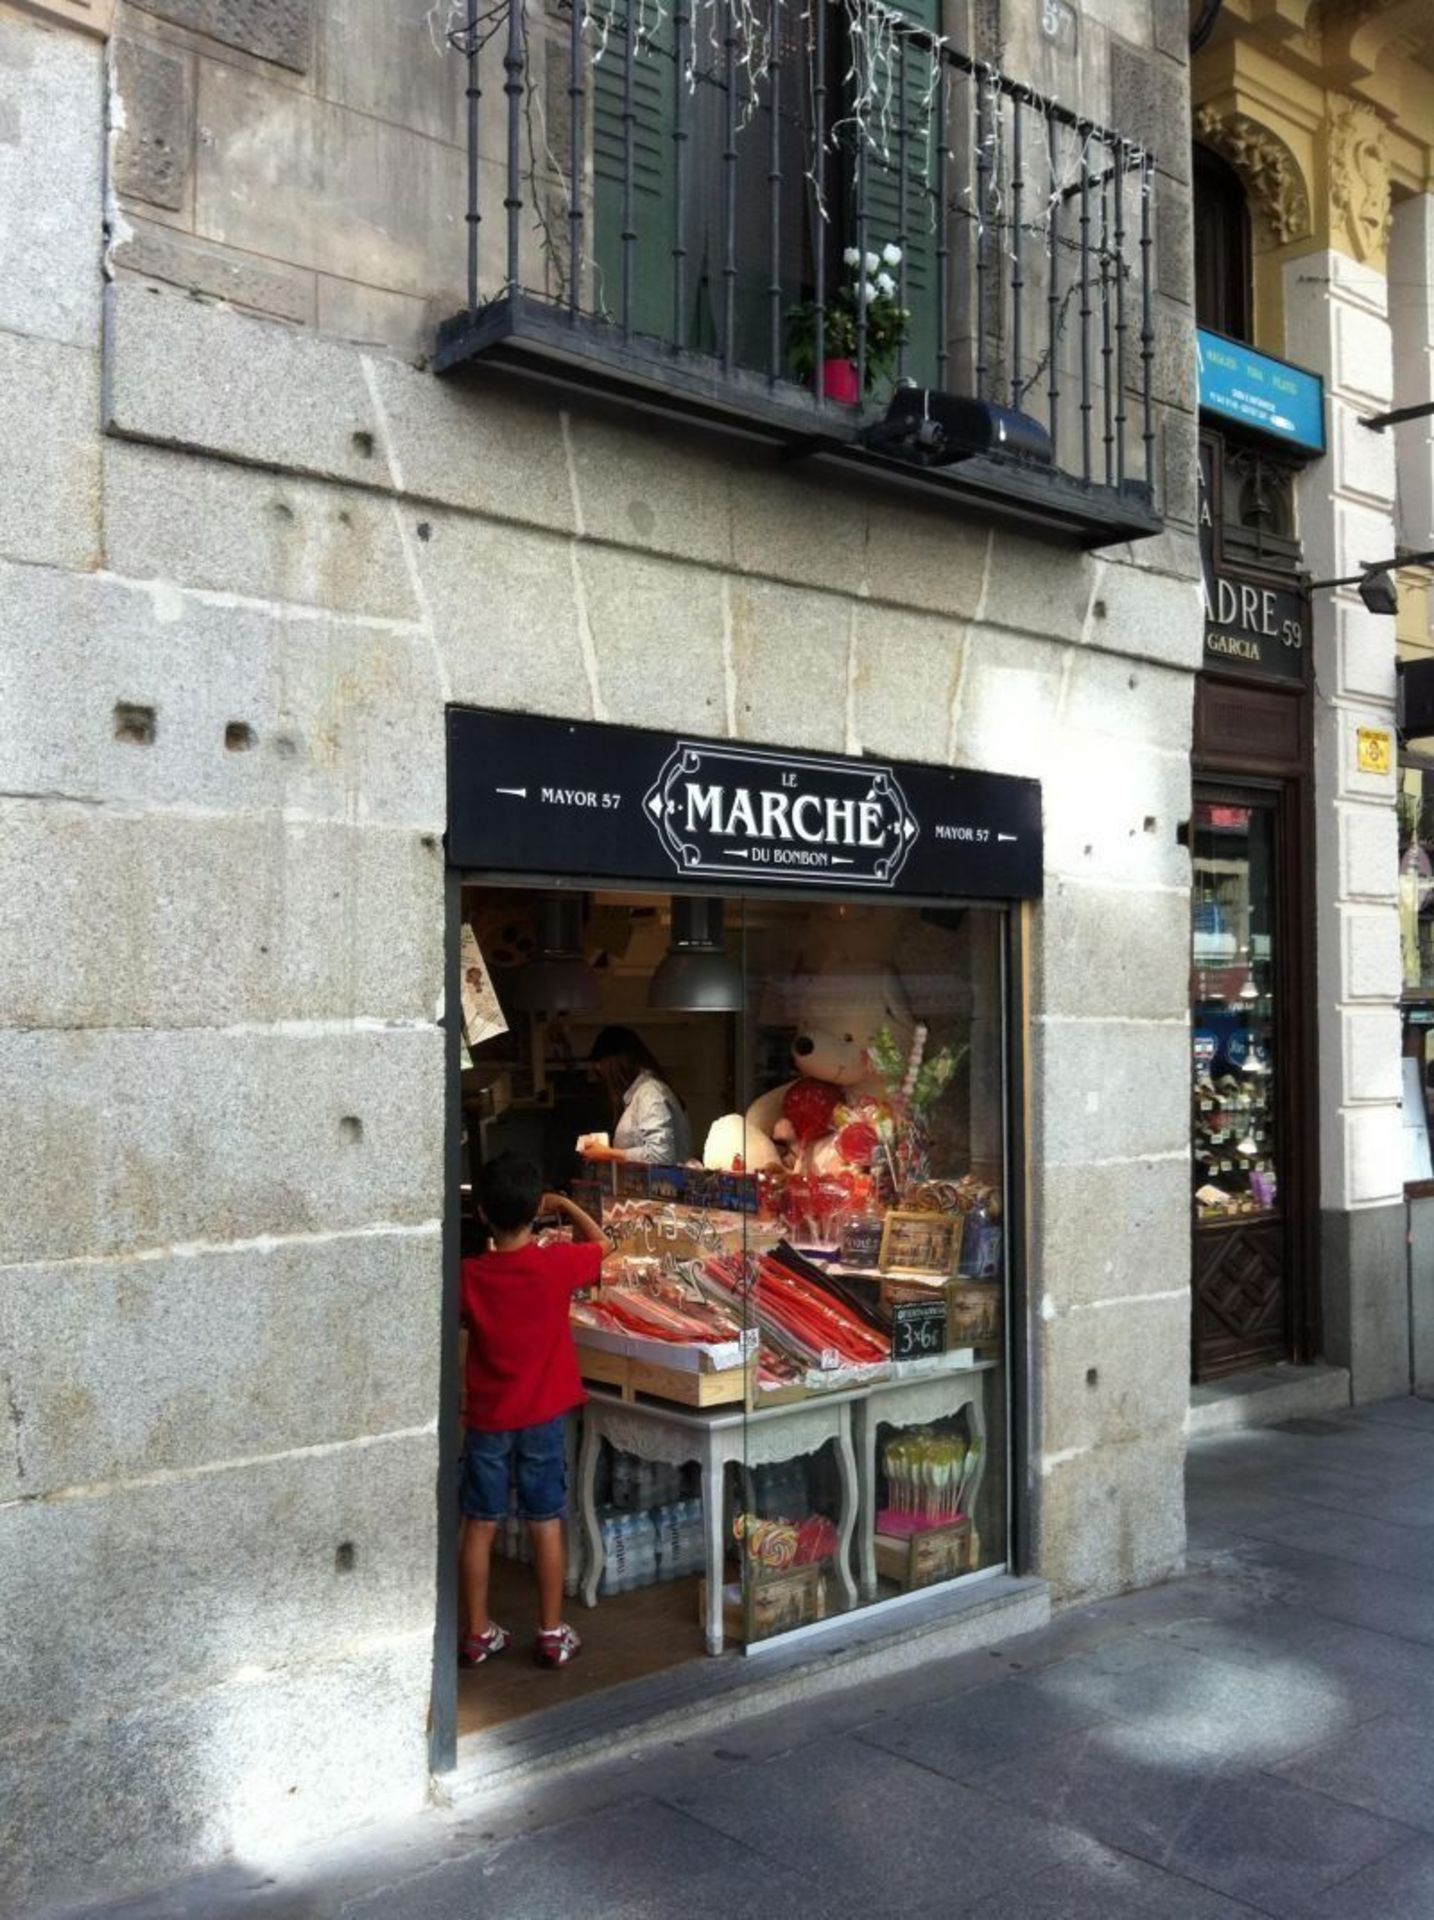 Proyecto de reforma y apertura de tienda de chuches en C/ Mayor 57 Madrid